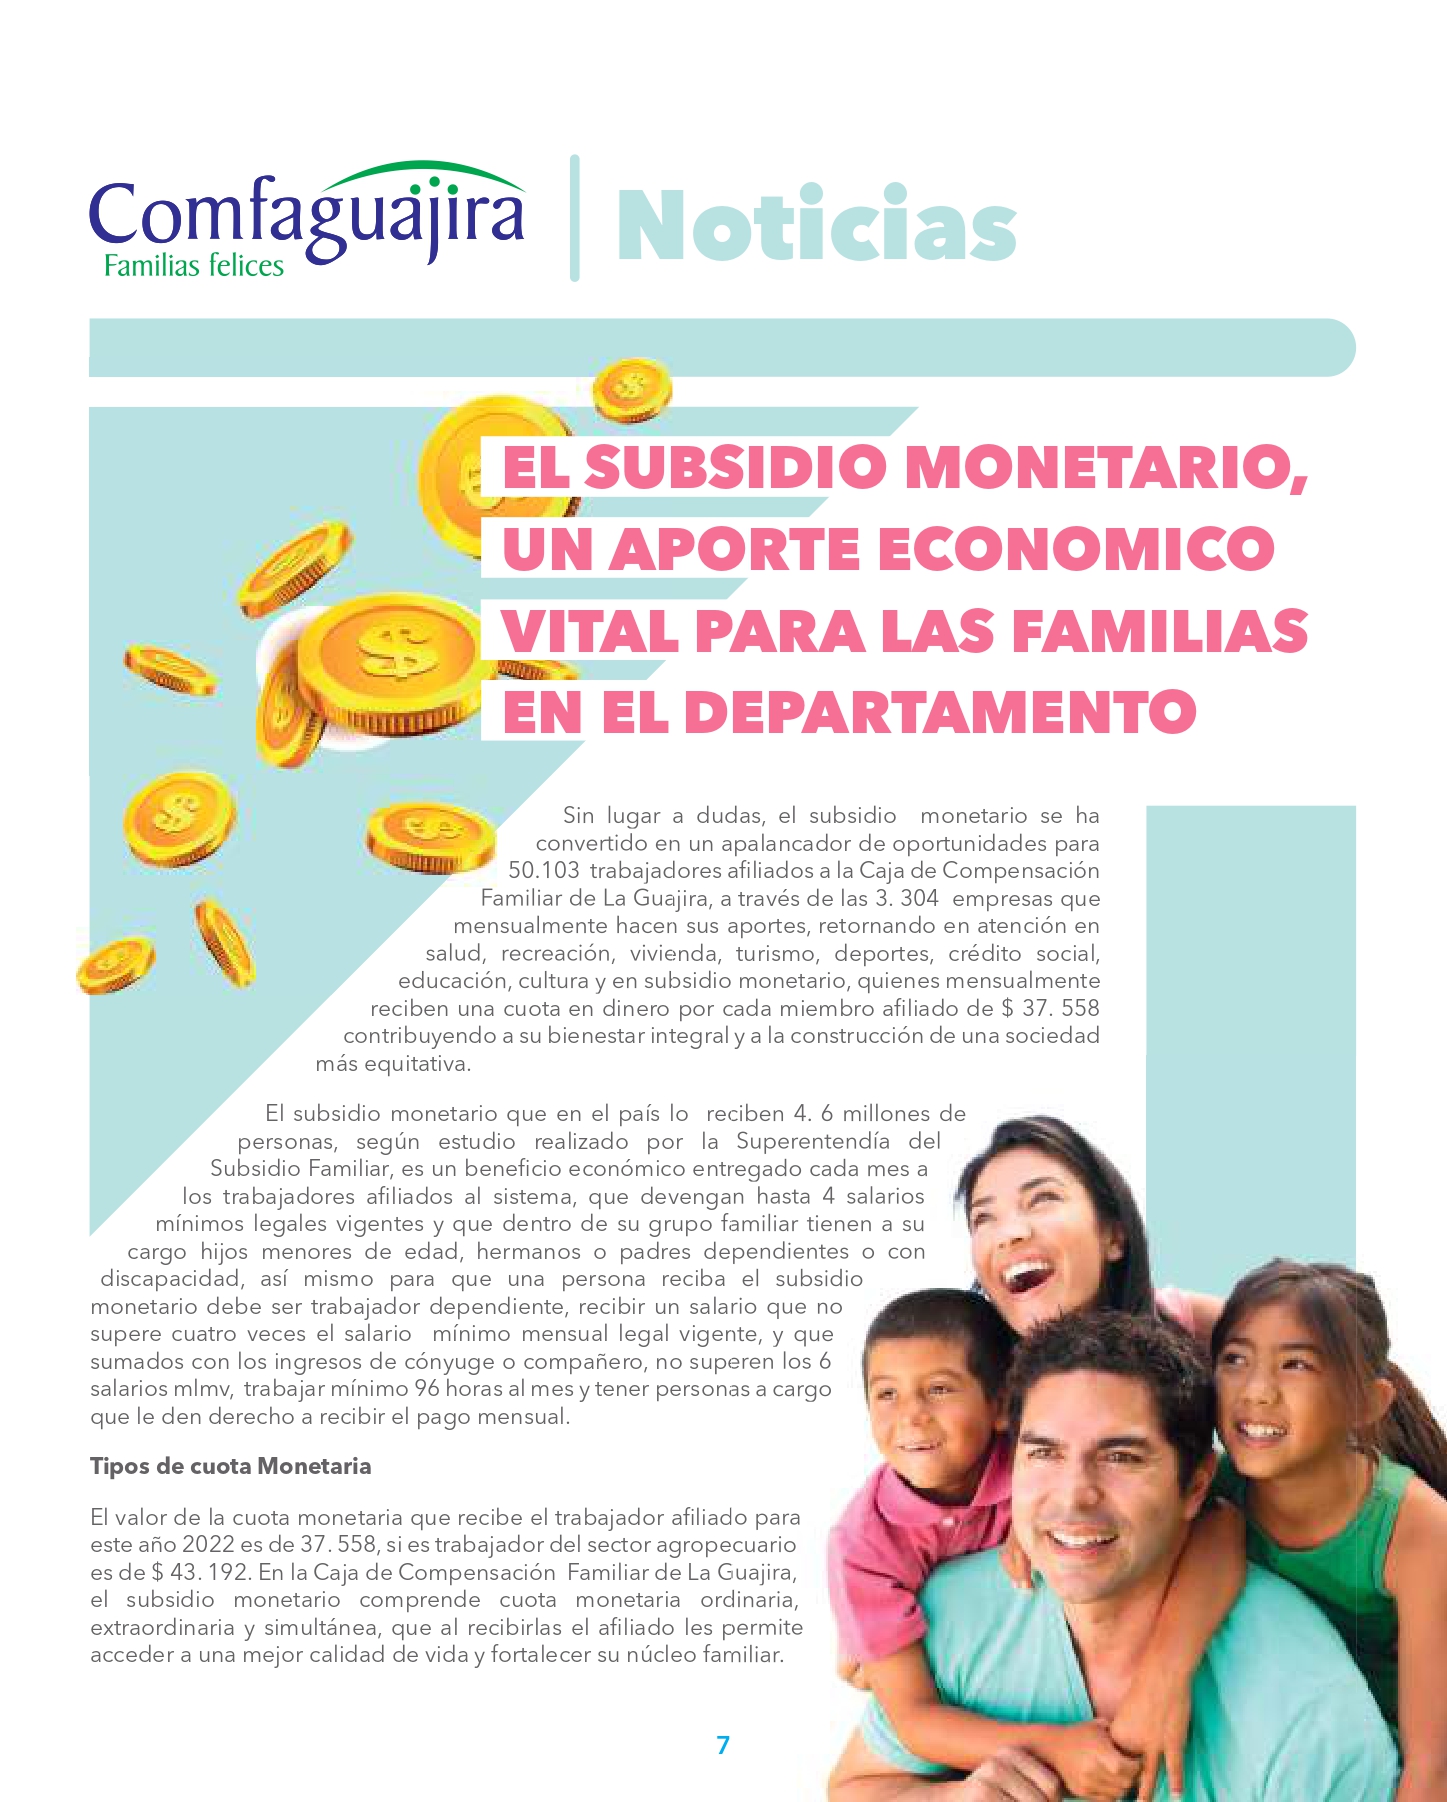 EL SUBSIDIO MONETARIO, UN APORTE ECONOMICO VITAL PARA LAS FAMILIAS EN EL DEPARTAMENTO